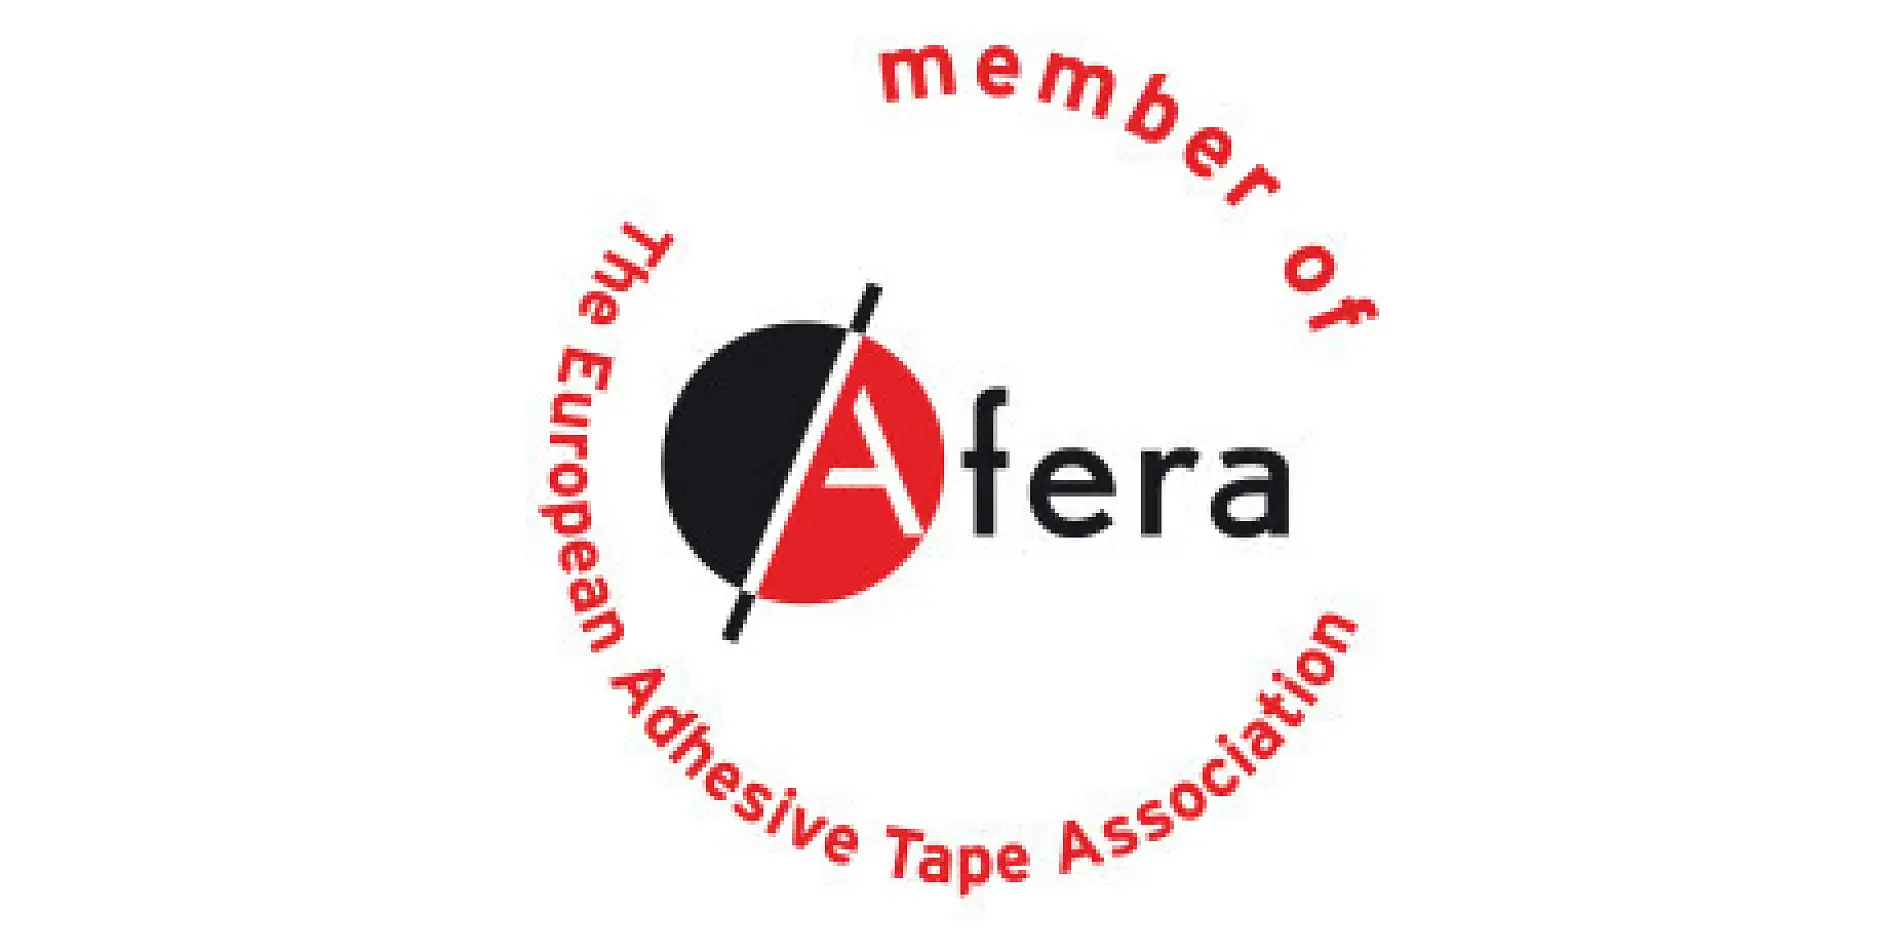 Η tesa είναι μέλος της afera - Ευρωπαϊκή Ένωση Κολλητικής Ταινίας. Μέλη του αποτελούν κατασκευαστές, προμηθευτές πρώτων υλών και μηχανημάτων, μεταποιητές (εκείνοι που τυπώνουν, κόβουν και πλαστικοποιούν τις κολλητικές ταινίες), καθώς και εθνικές οργανώσεις ταινιών.